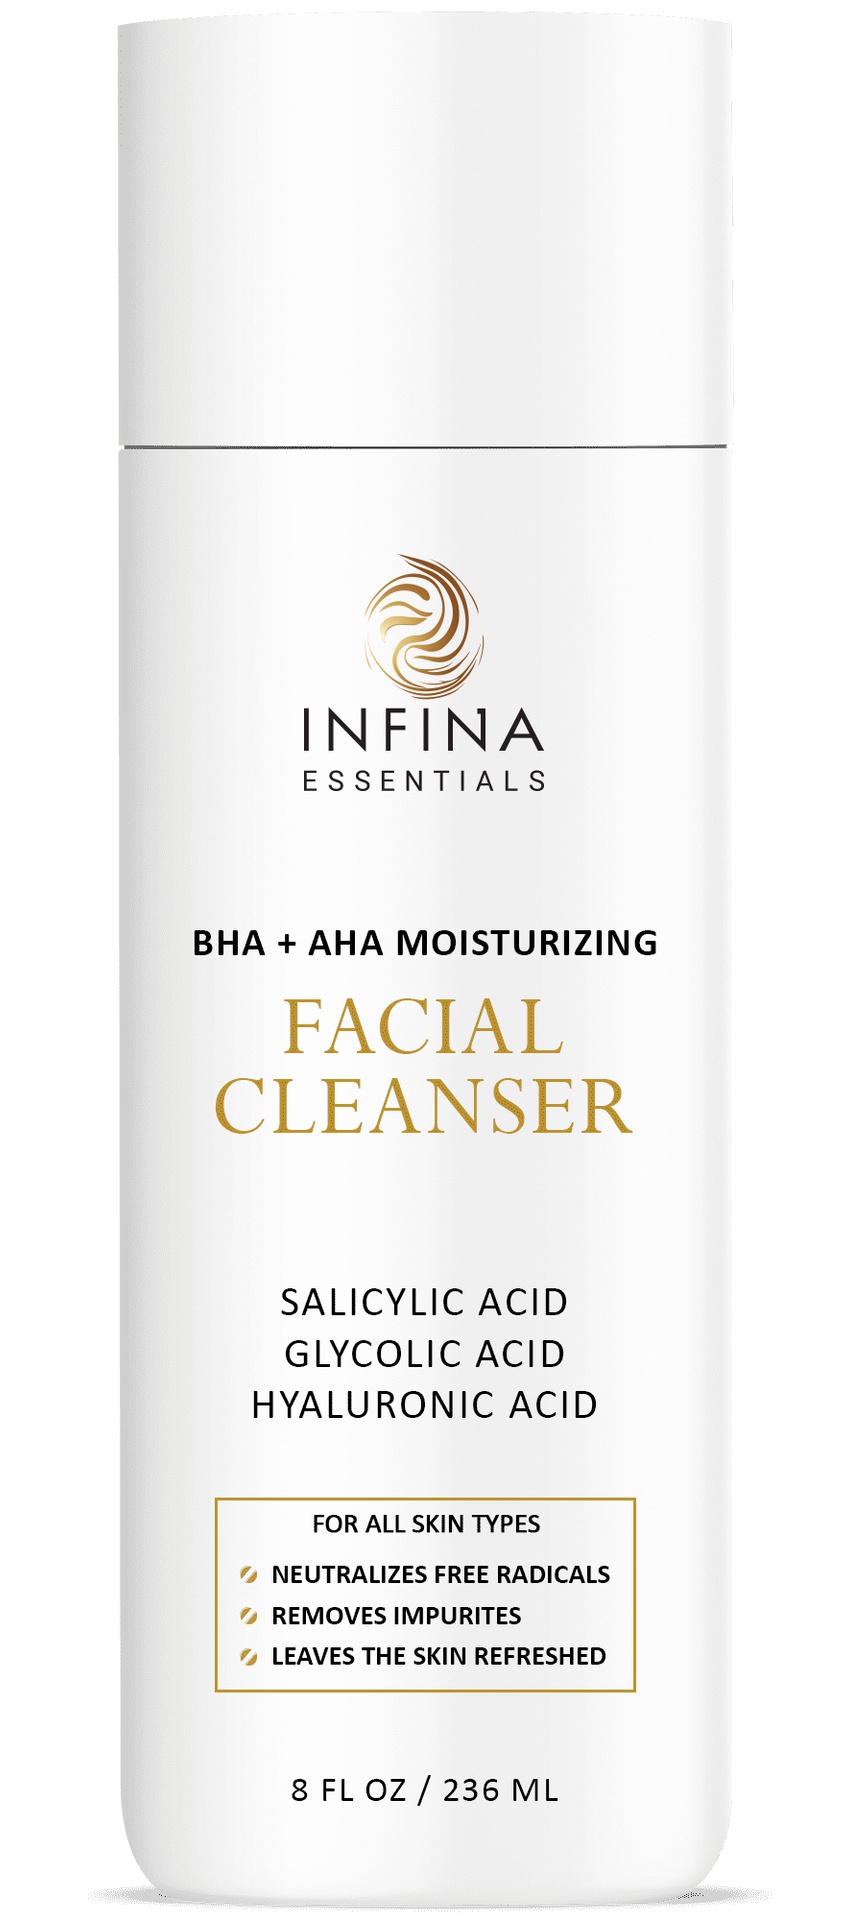 Infina Essentials Facial Cleanser